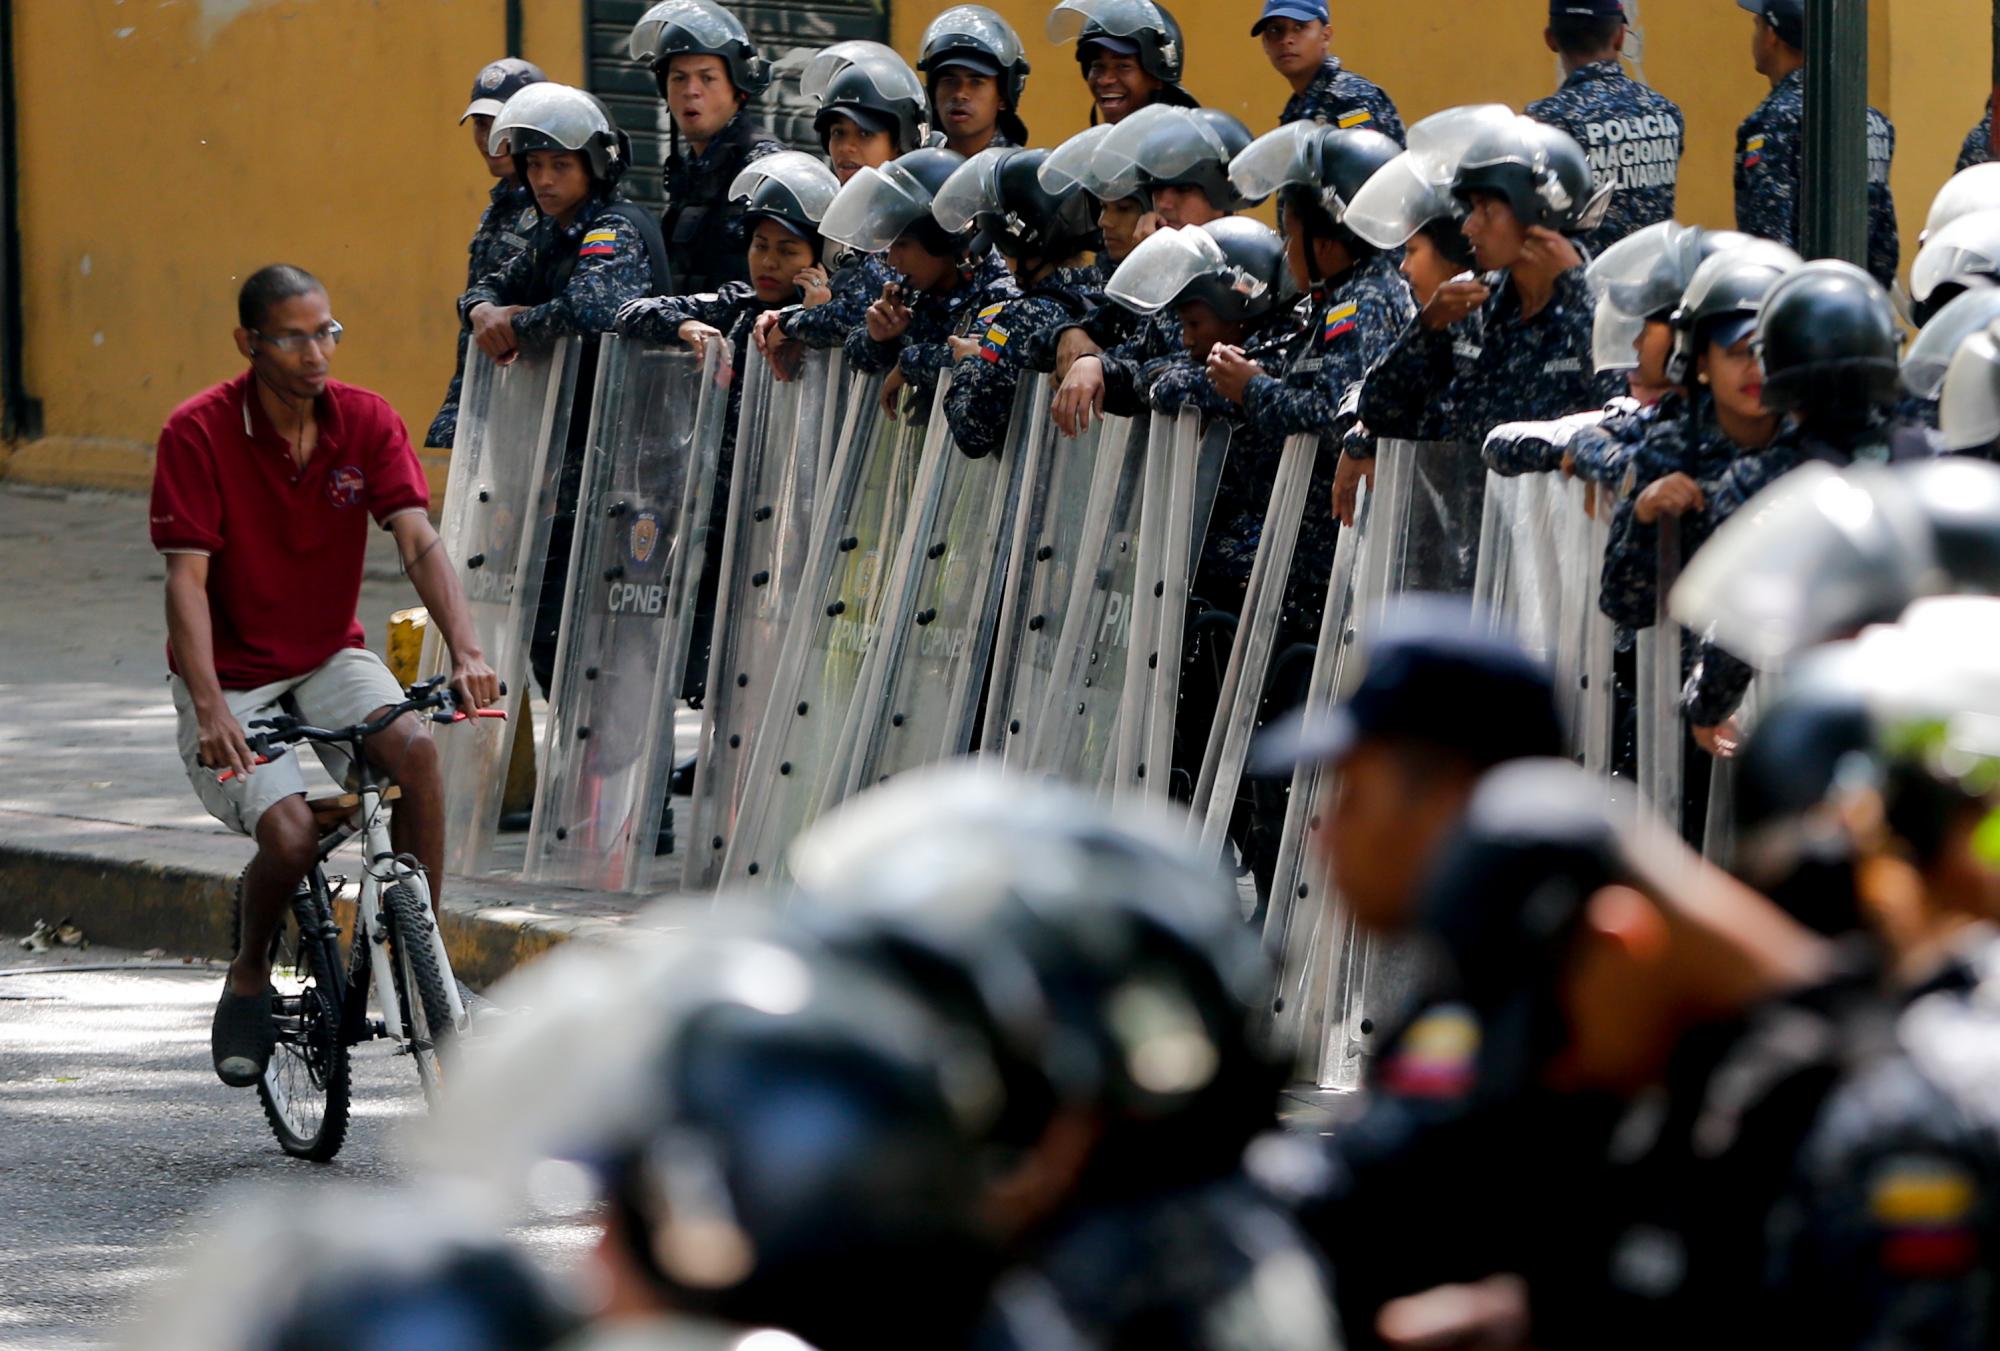 La policía se mantiene en guardia ante una marcha de una coalición de partidos de oposición que están solicitando a los legisladores de una agencia la aplicación de la ley en Caracas, Venezuela, el martes, marzo 19, 2019.